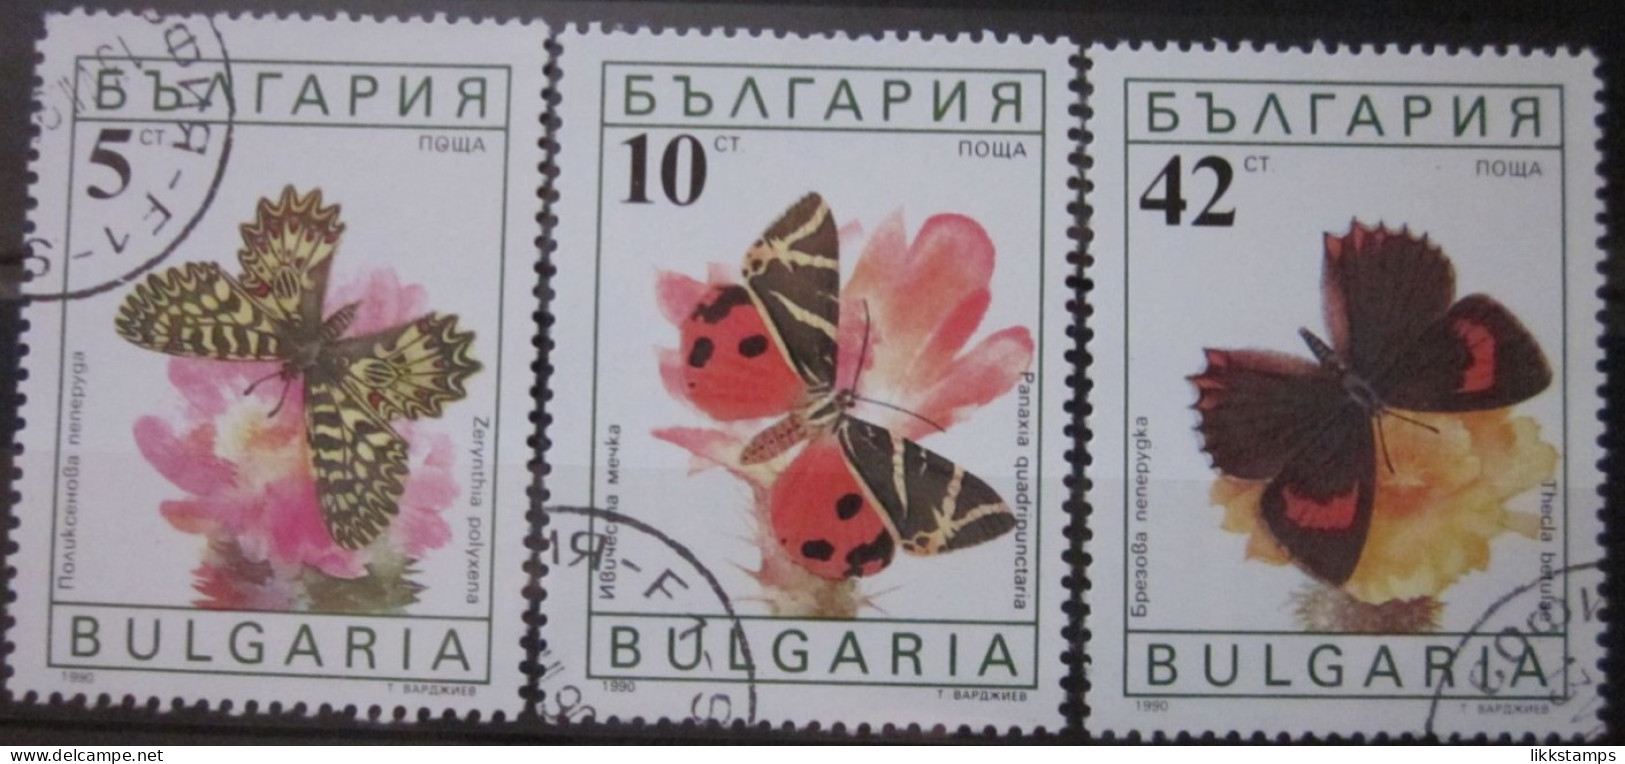 BULGARIA 1990 ~ S.G. 3699, 3700 & 3703, ~ BUTTERFLIES AND MOTHS. ~  VFU #02959 - Gebruikt